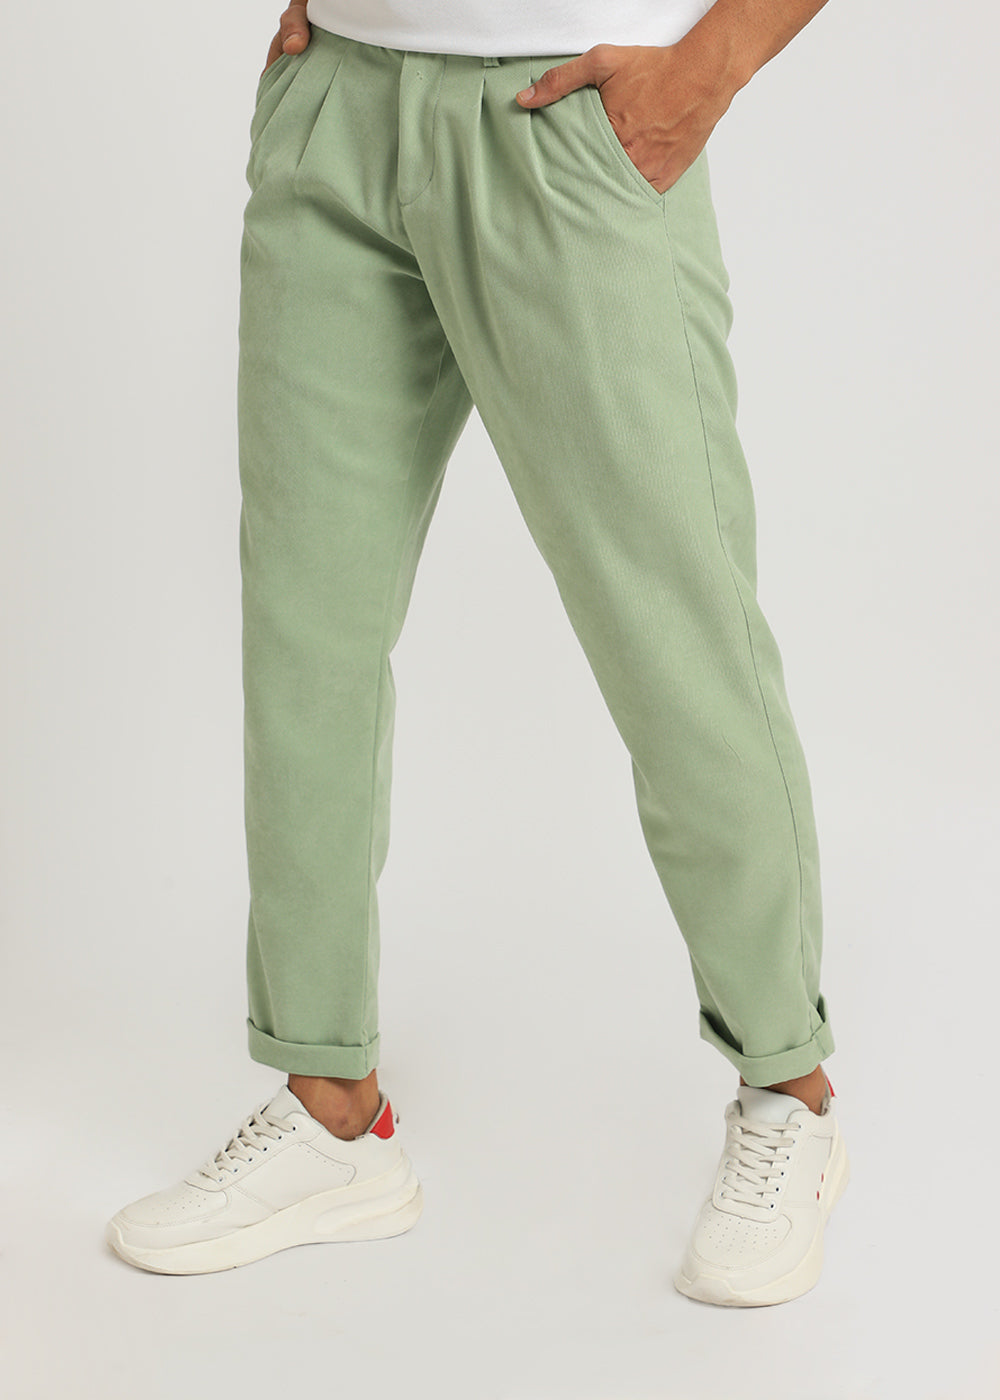 Mint Green Korean Trouser